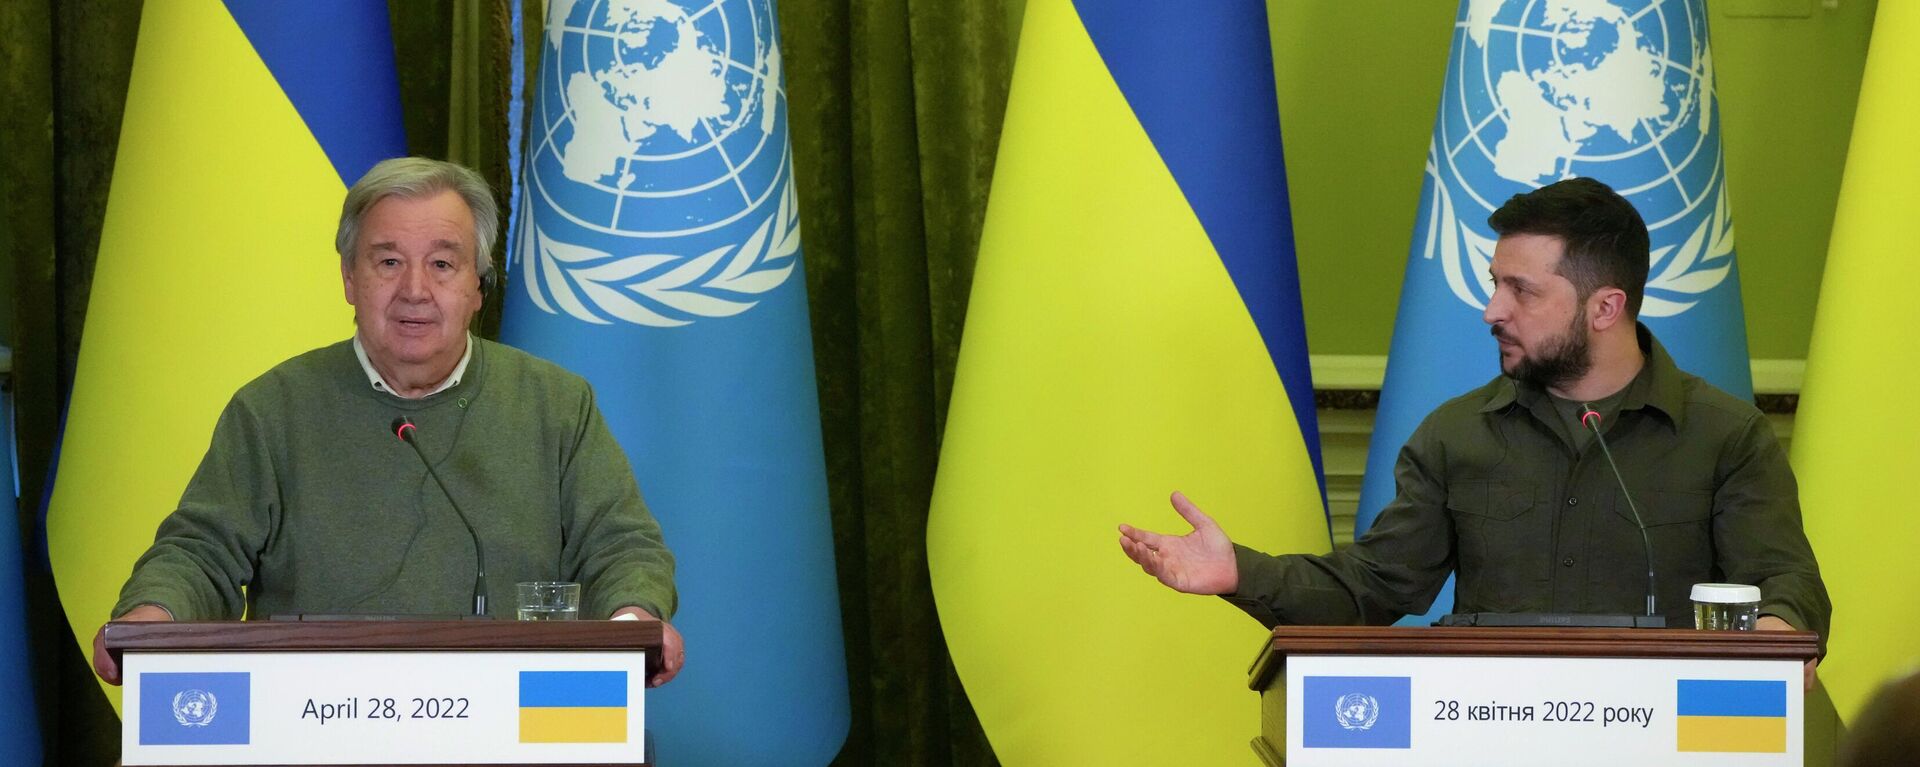 O secretário-geral da Organização das Nações Unidas (ONU), António Guterres (à esquerda), participa de encontro com o presidente ucraniano, Vladimir Zelensky, em Kiev, na Ucrânia, em 28 de abril de 2022 - Sputnik Brasil, 1920, 14.09.2022